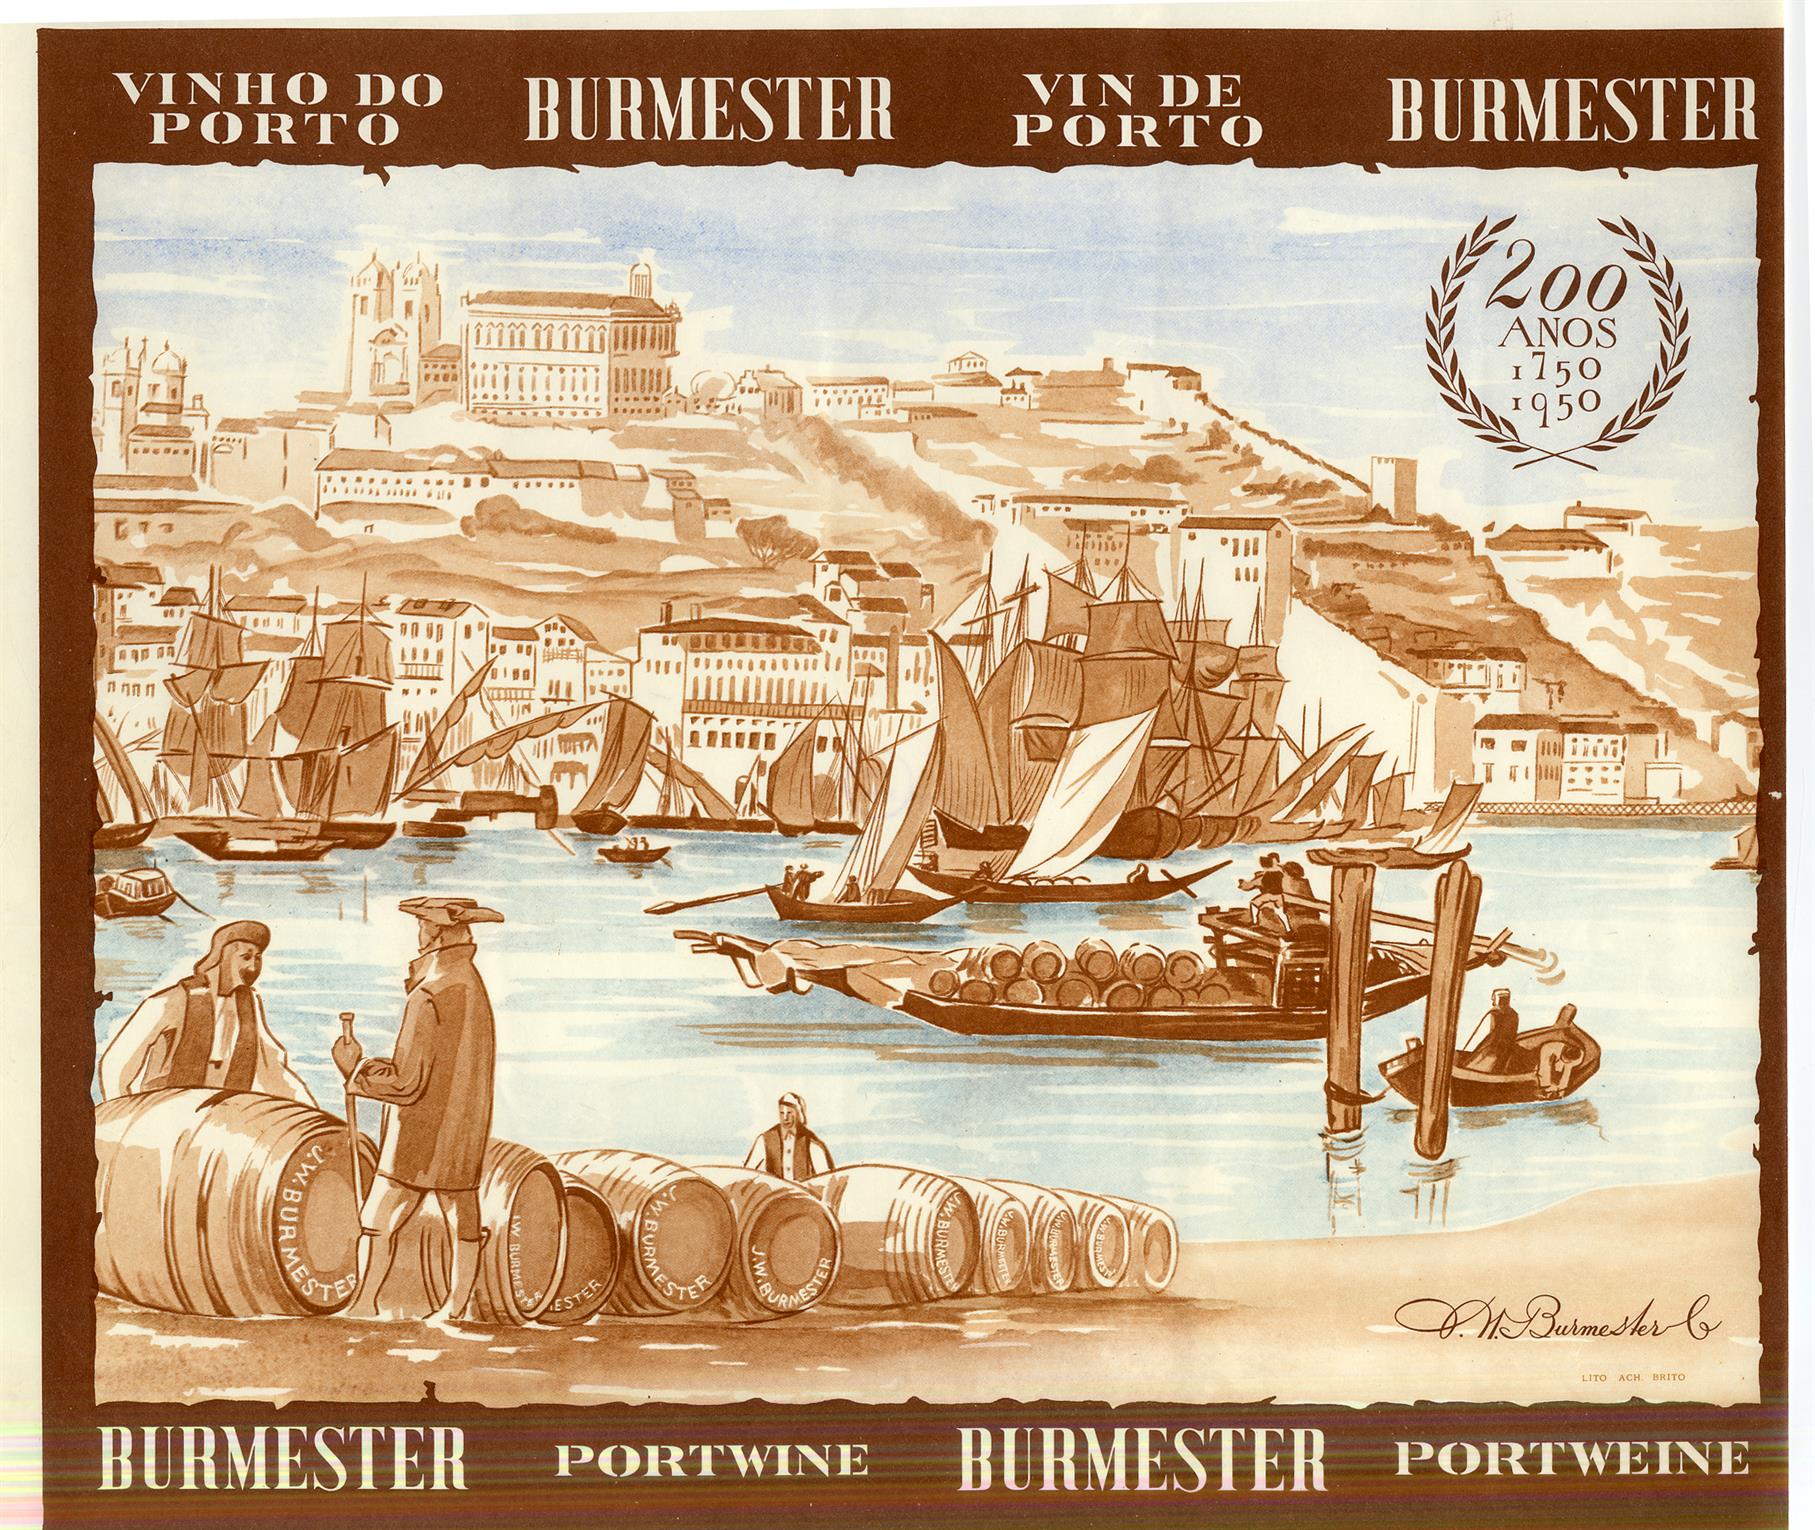 Vinho do Porto Burmester : 200 anos : 17501950